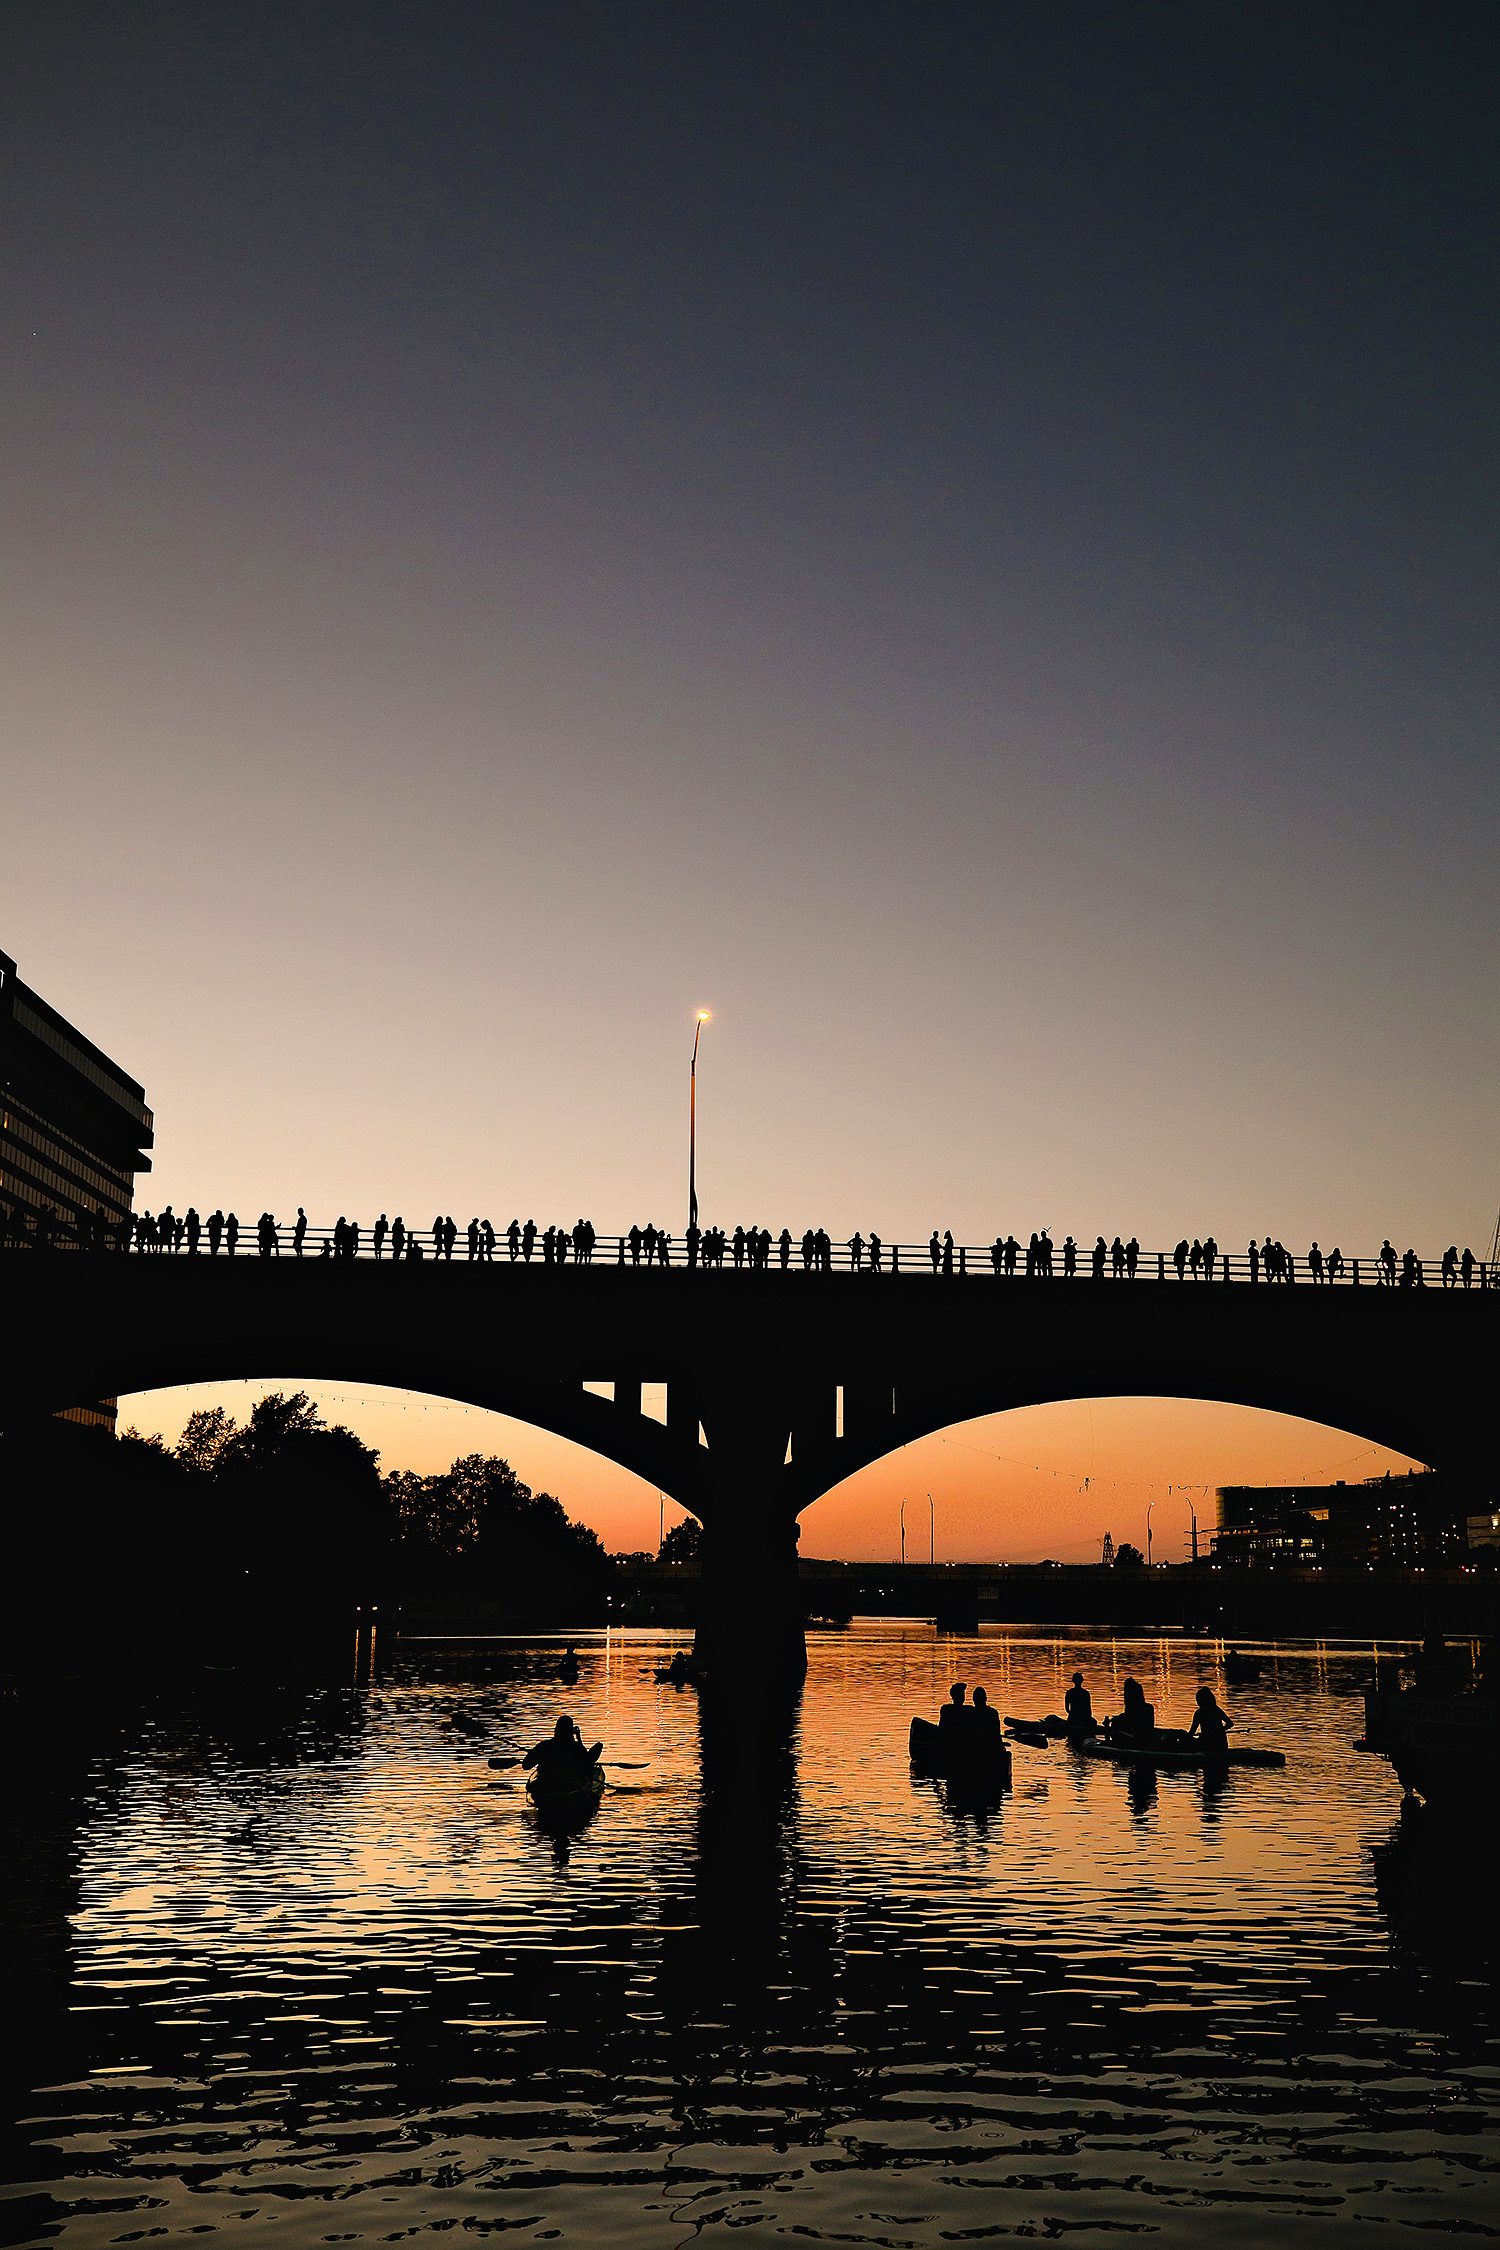 Congress Bridge Bat Tour